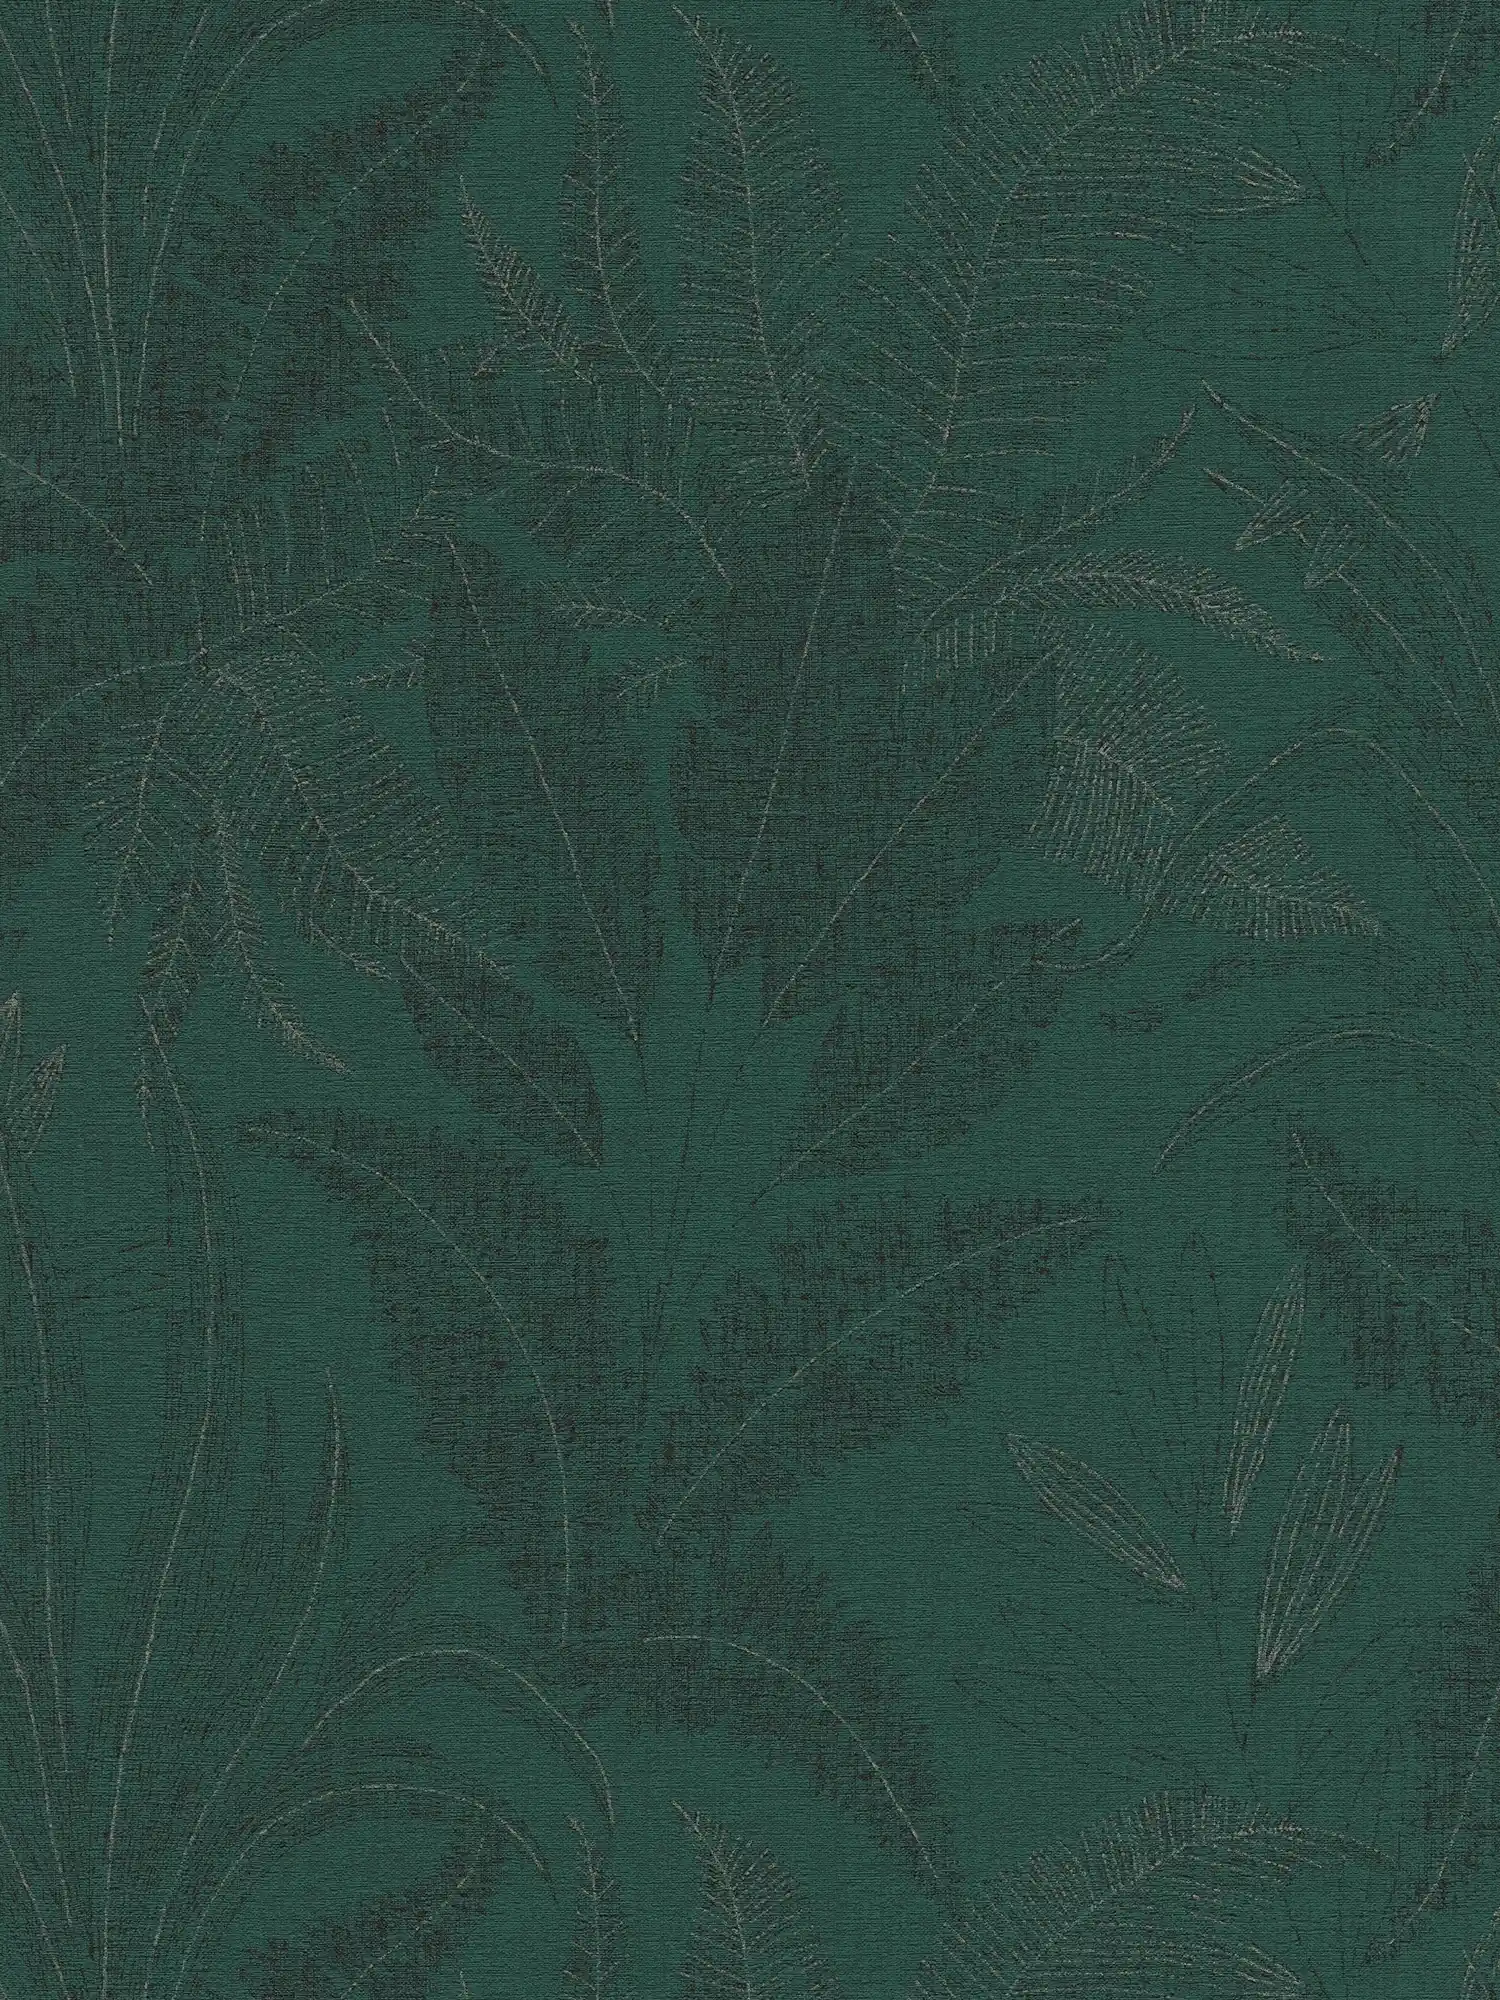         Tapete mit Dschungelbemusterung leicht strukturiert – Grün, Dunkelgrün, Schwarz
    